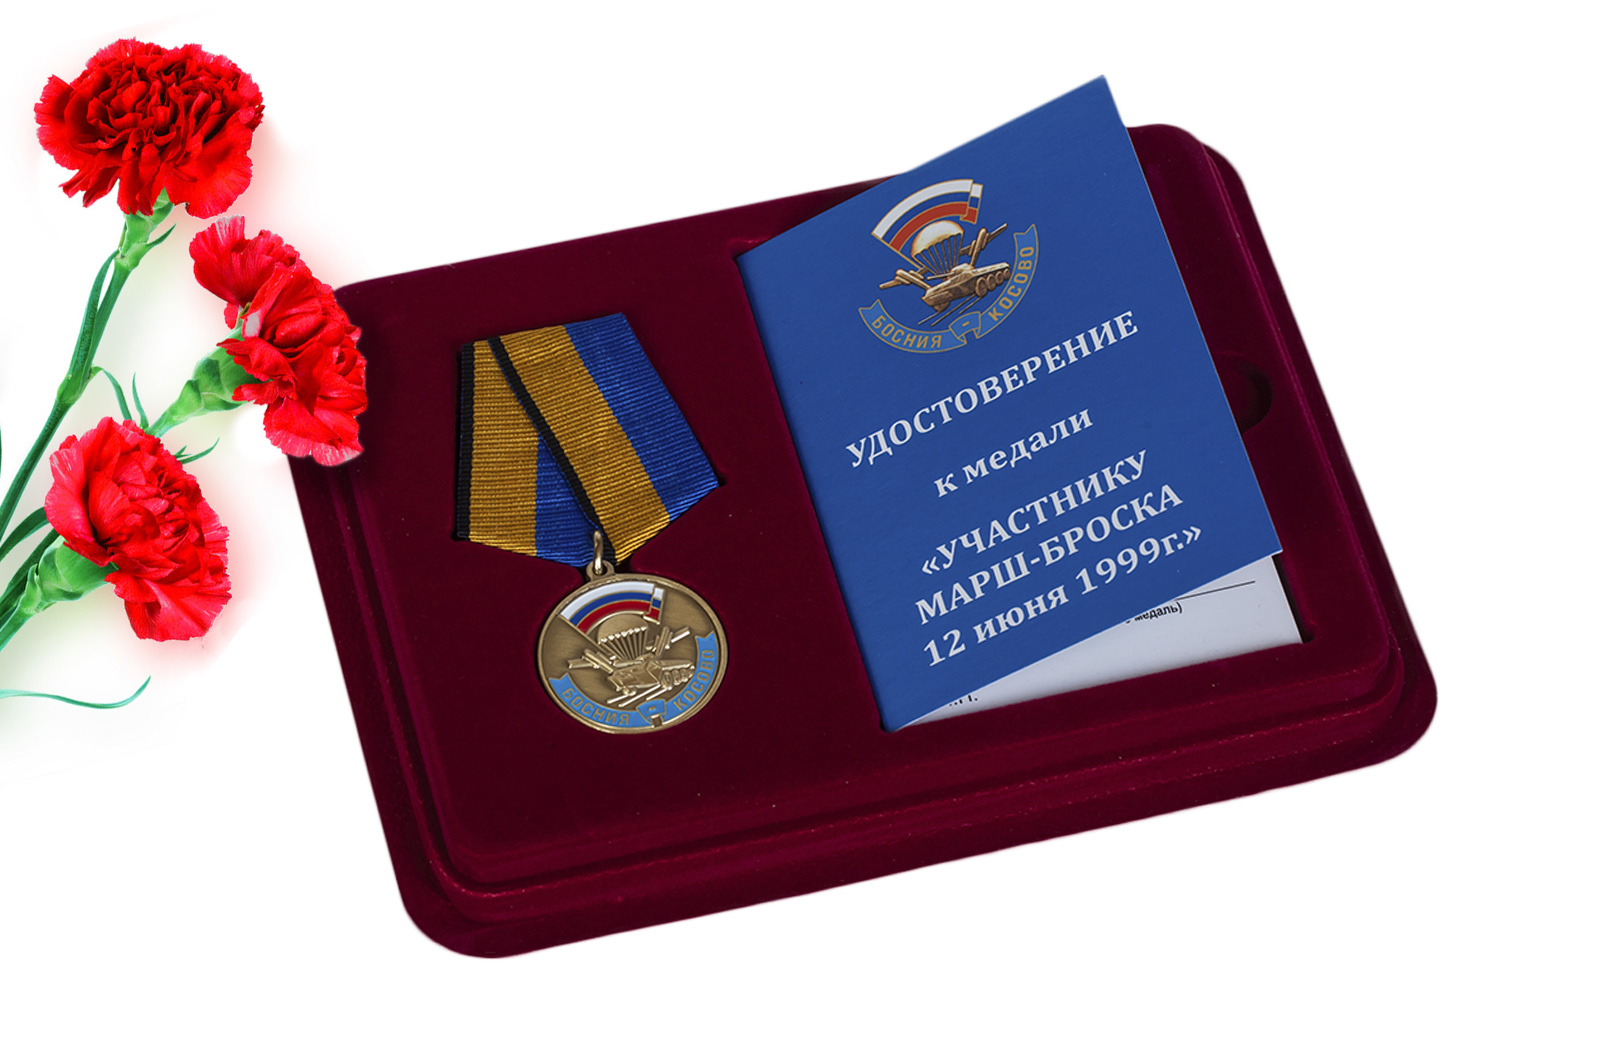 Купить памятную медаль Участнику марш-броска 12.06.1999 г. Босния-Косово оптом выгодно